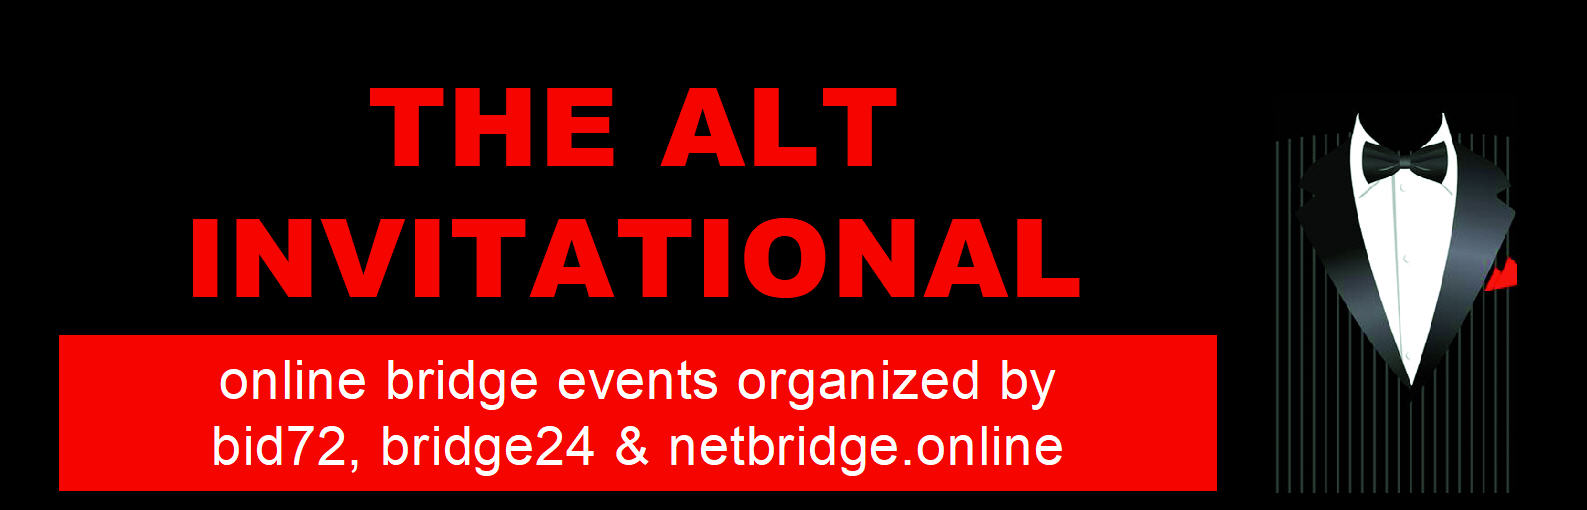 Algemeen logo van de evenementen Alt Invitational